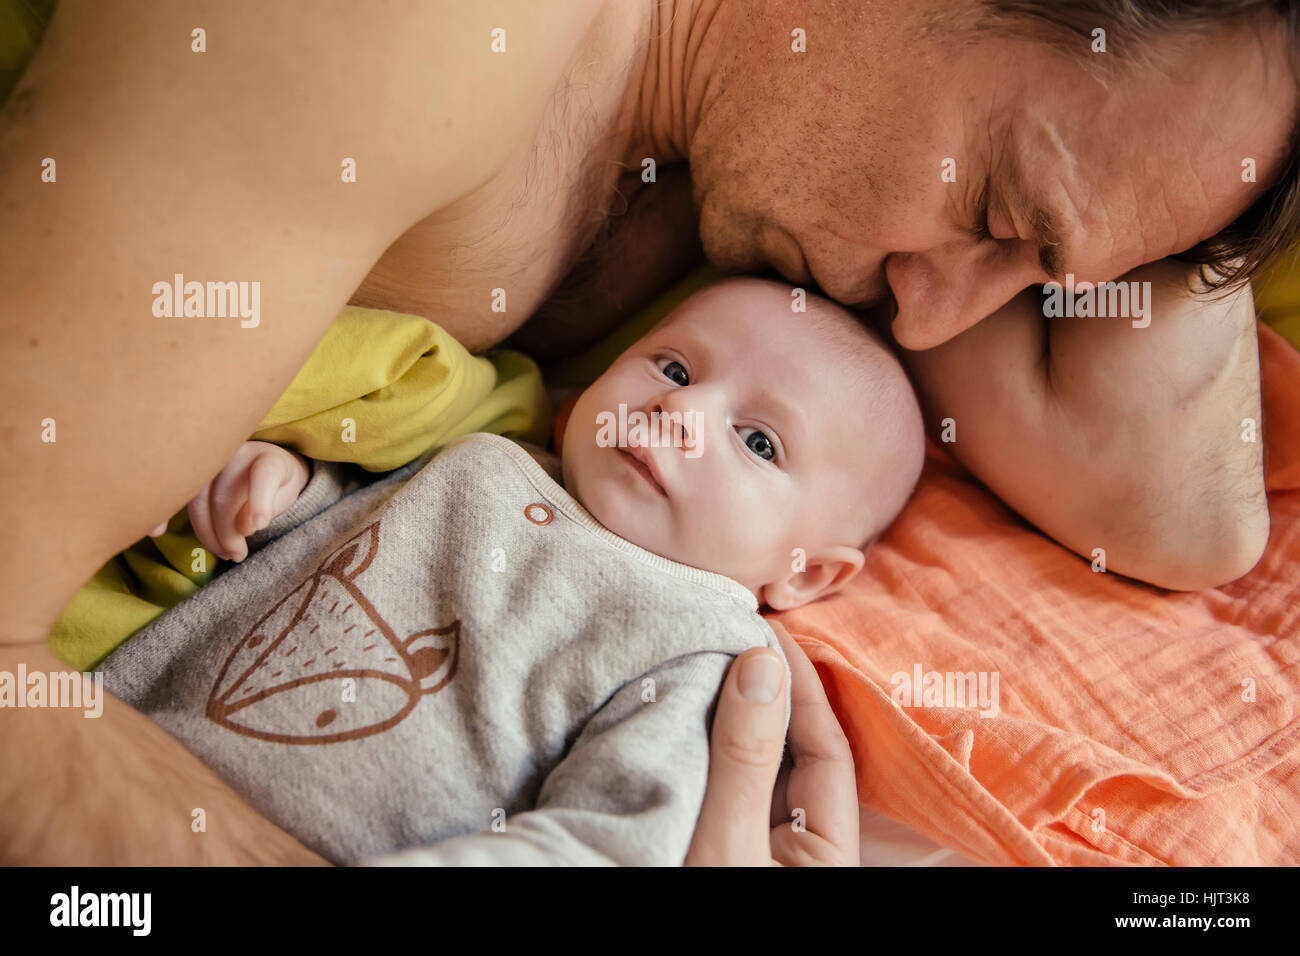 Vater im Bett mit seinem Neugeborenen Baby kuscheln Stockfoto